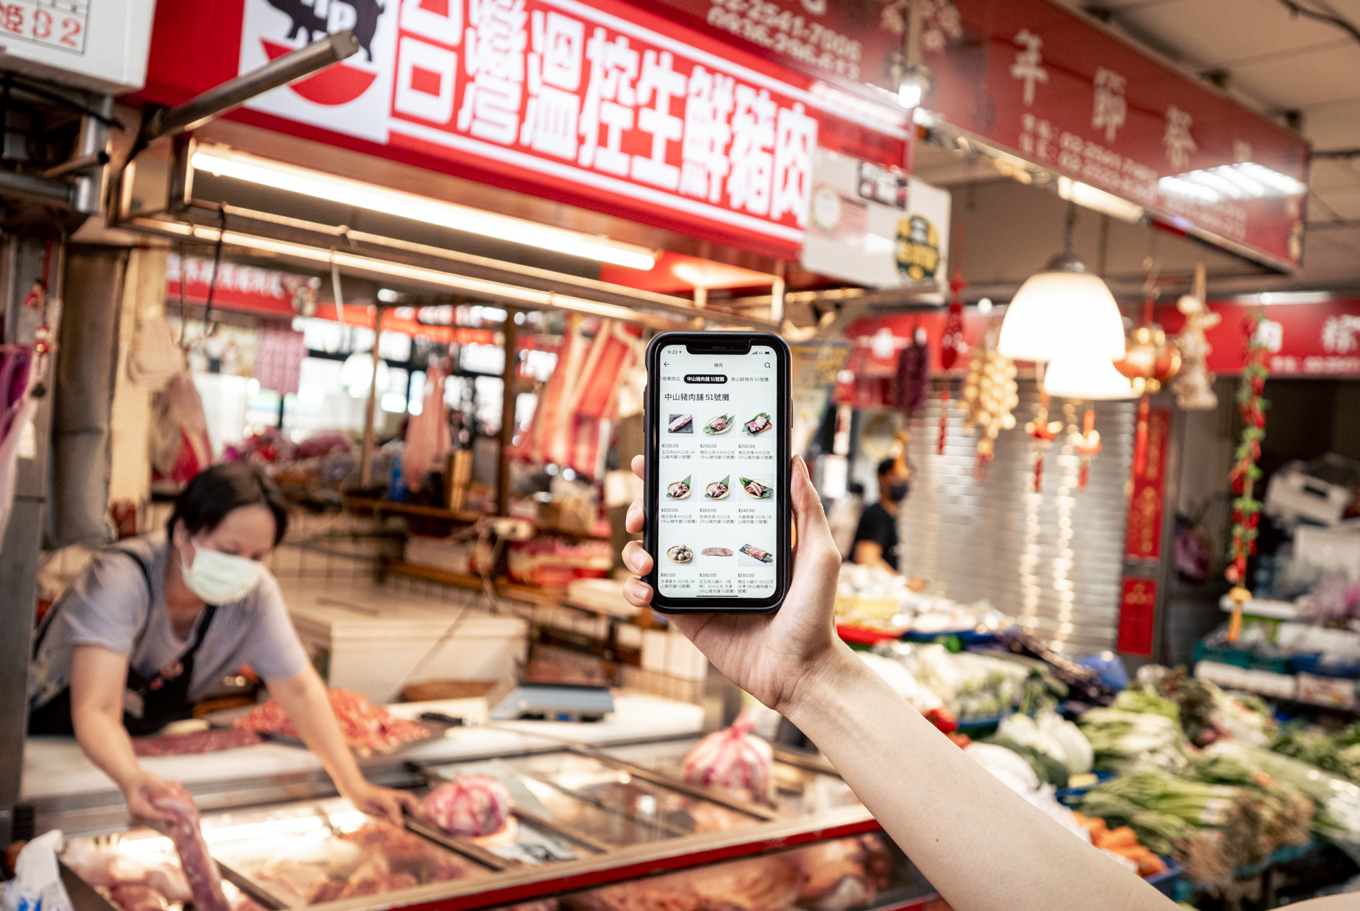 Kios pasar menggunakan siaran langsung online untuk mengubah kebiasaan orang mengunjungi pasar. Sumber: News & Market